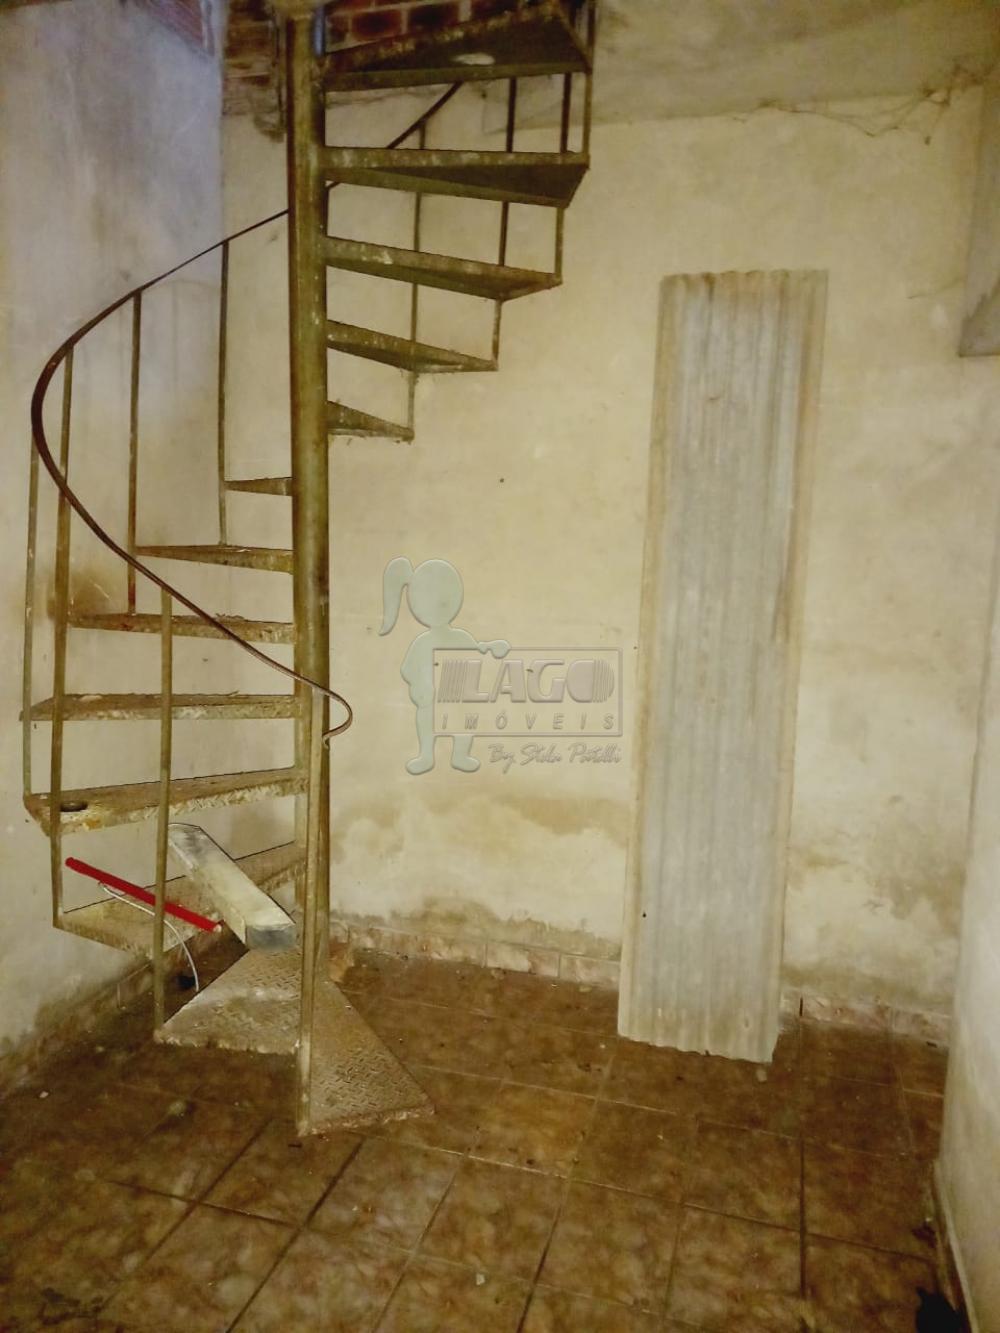 Comprar Casas / Padrão em Ribeirão Preto R$ 210.000,00 - Foto 4